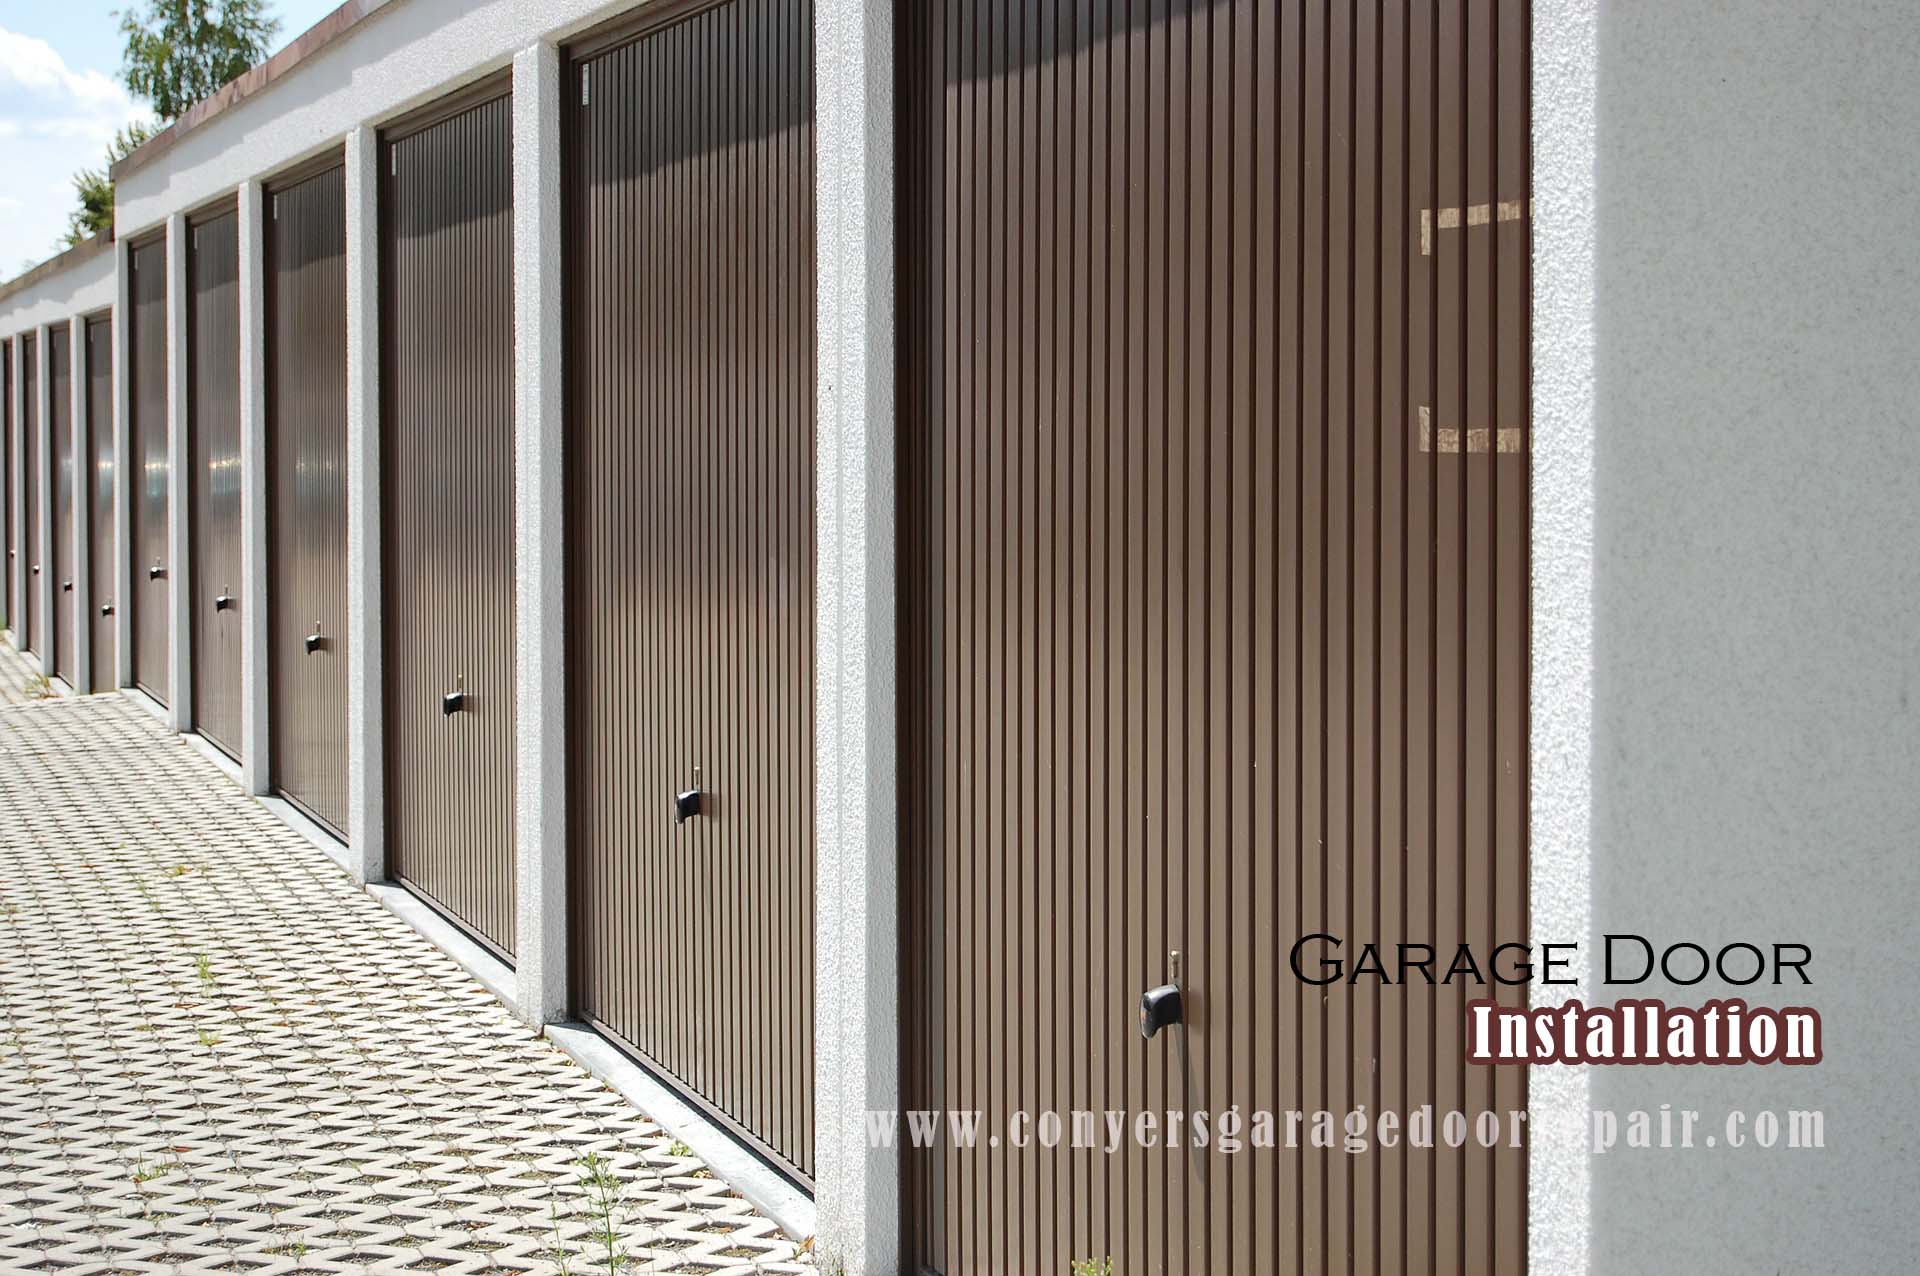 Conyers-garage-door-installation